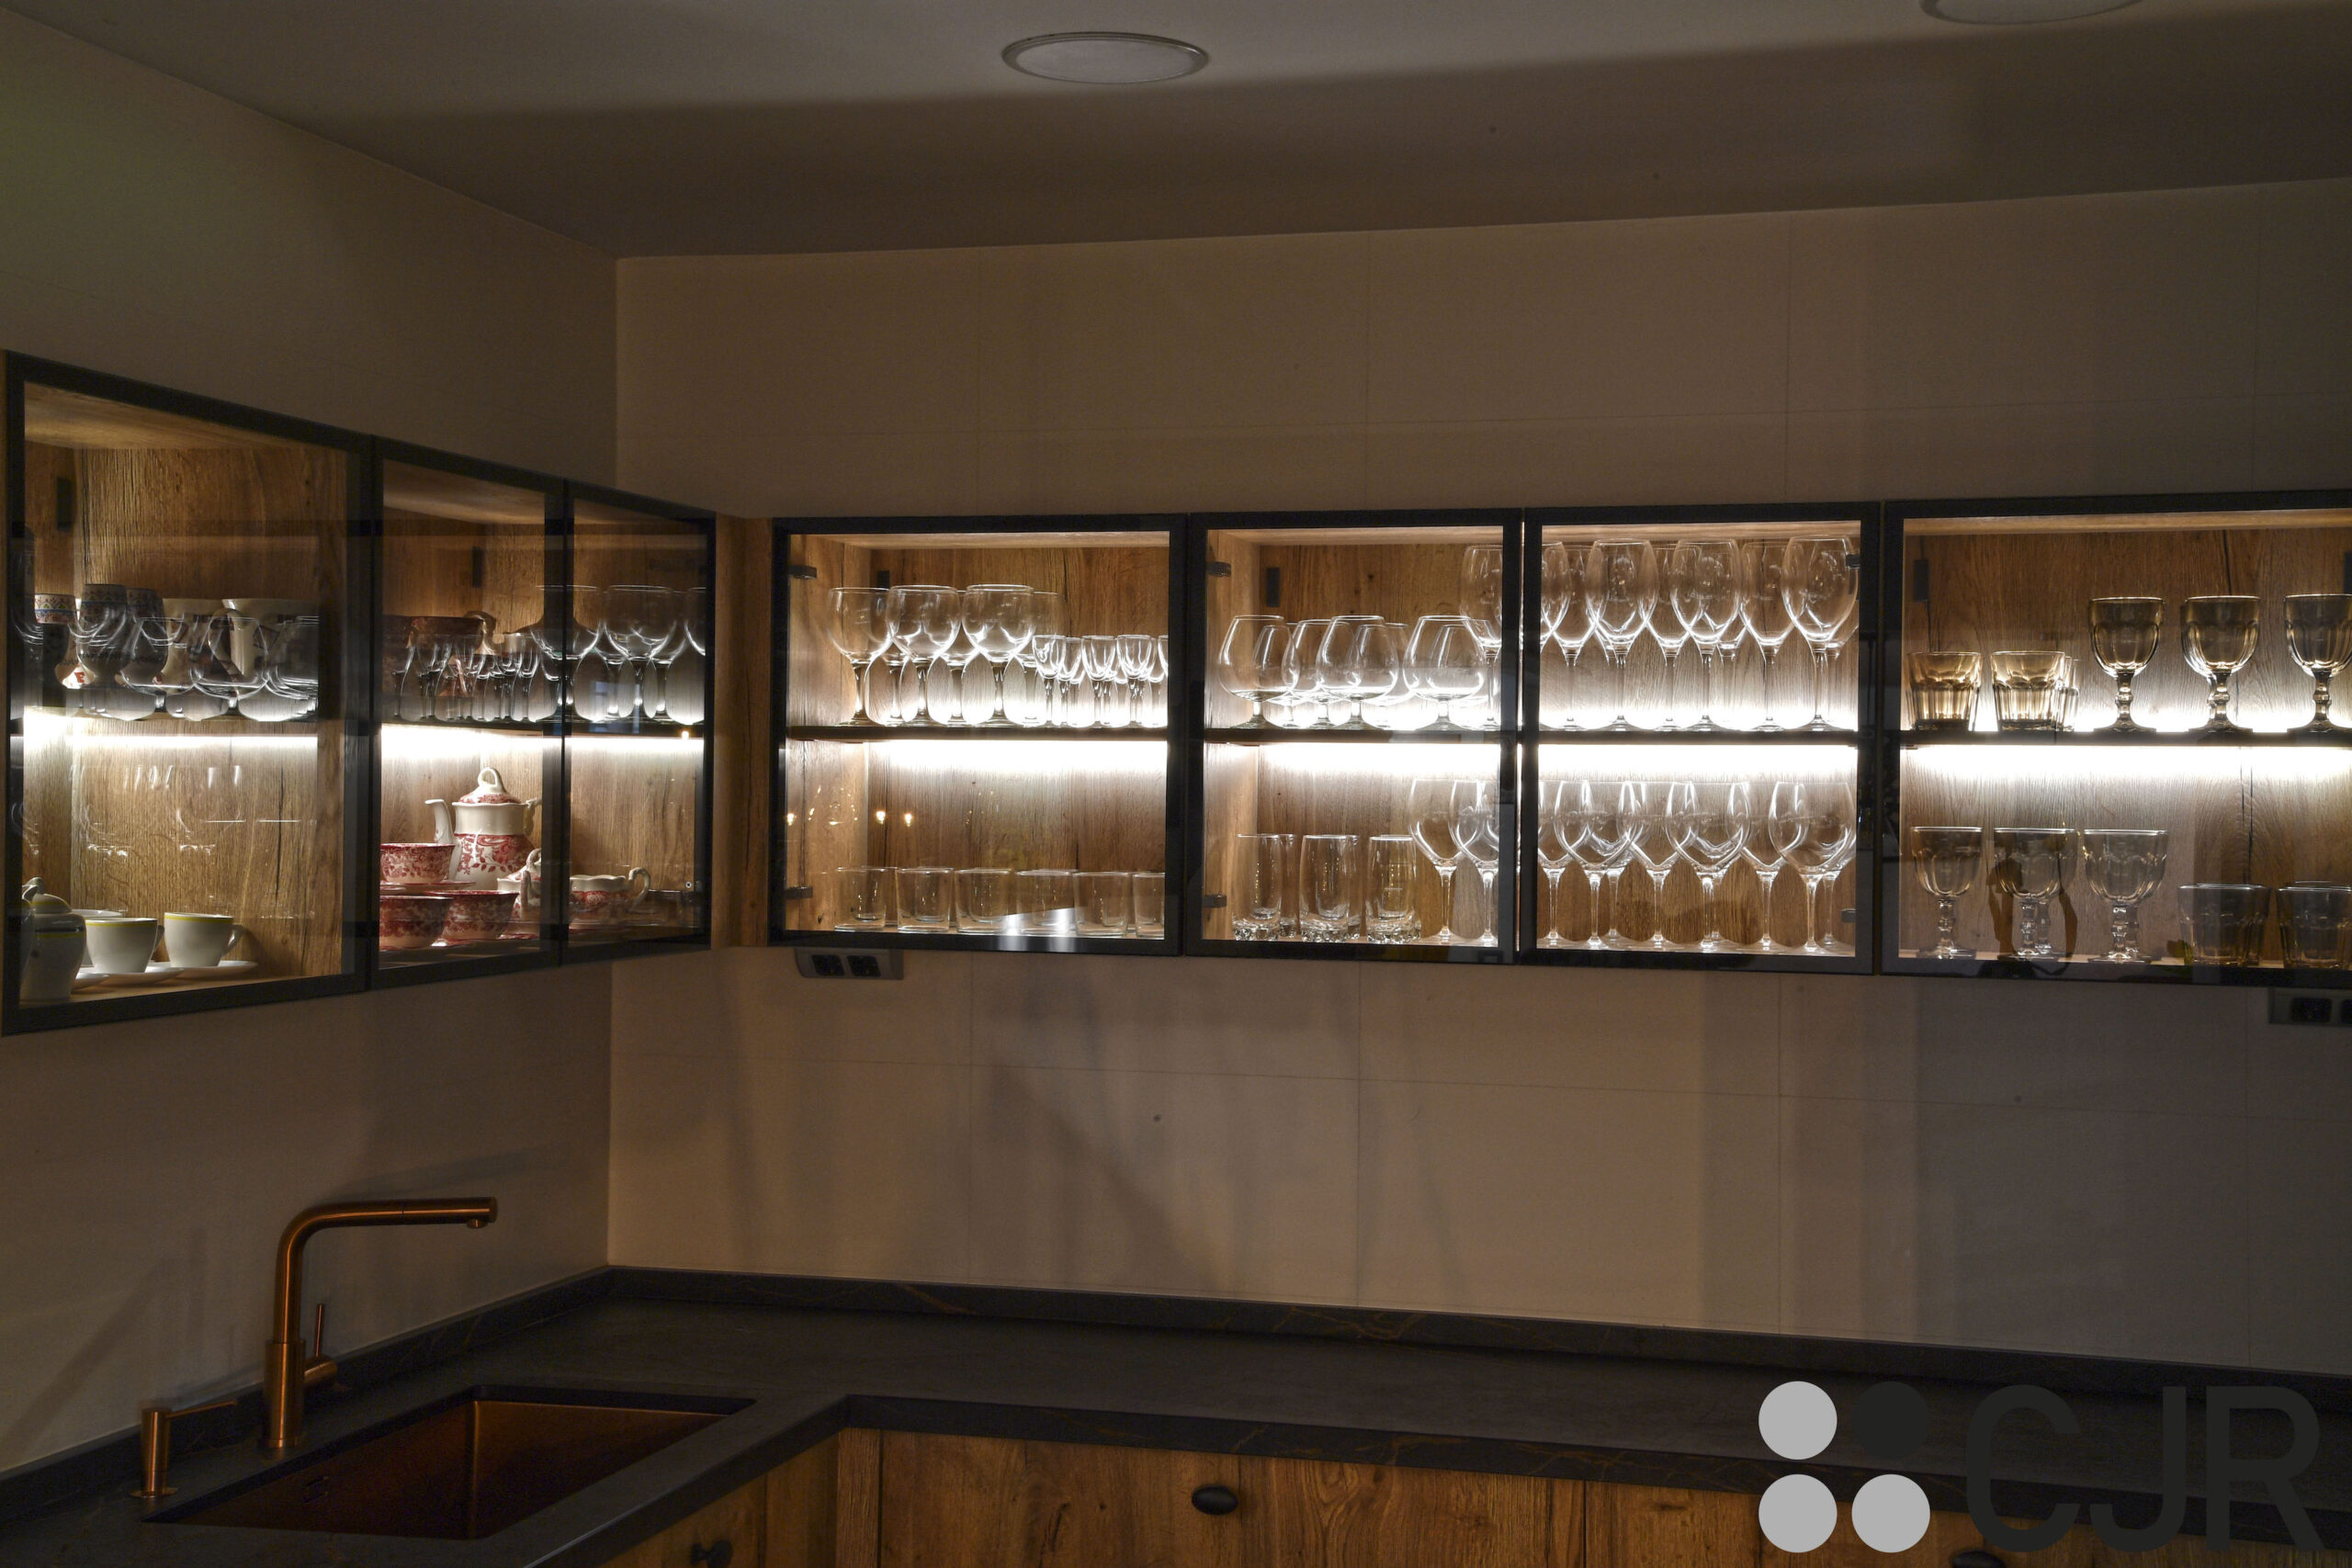 vitrinas iluminadas con cristal ahumado en en cocina rustica madera y negra cocinas cjr